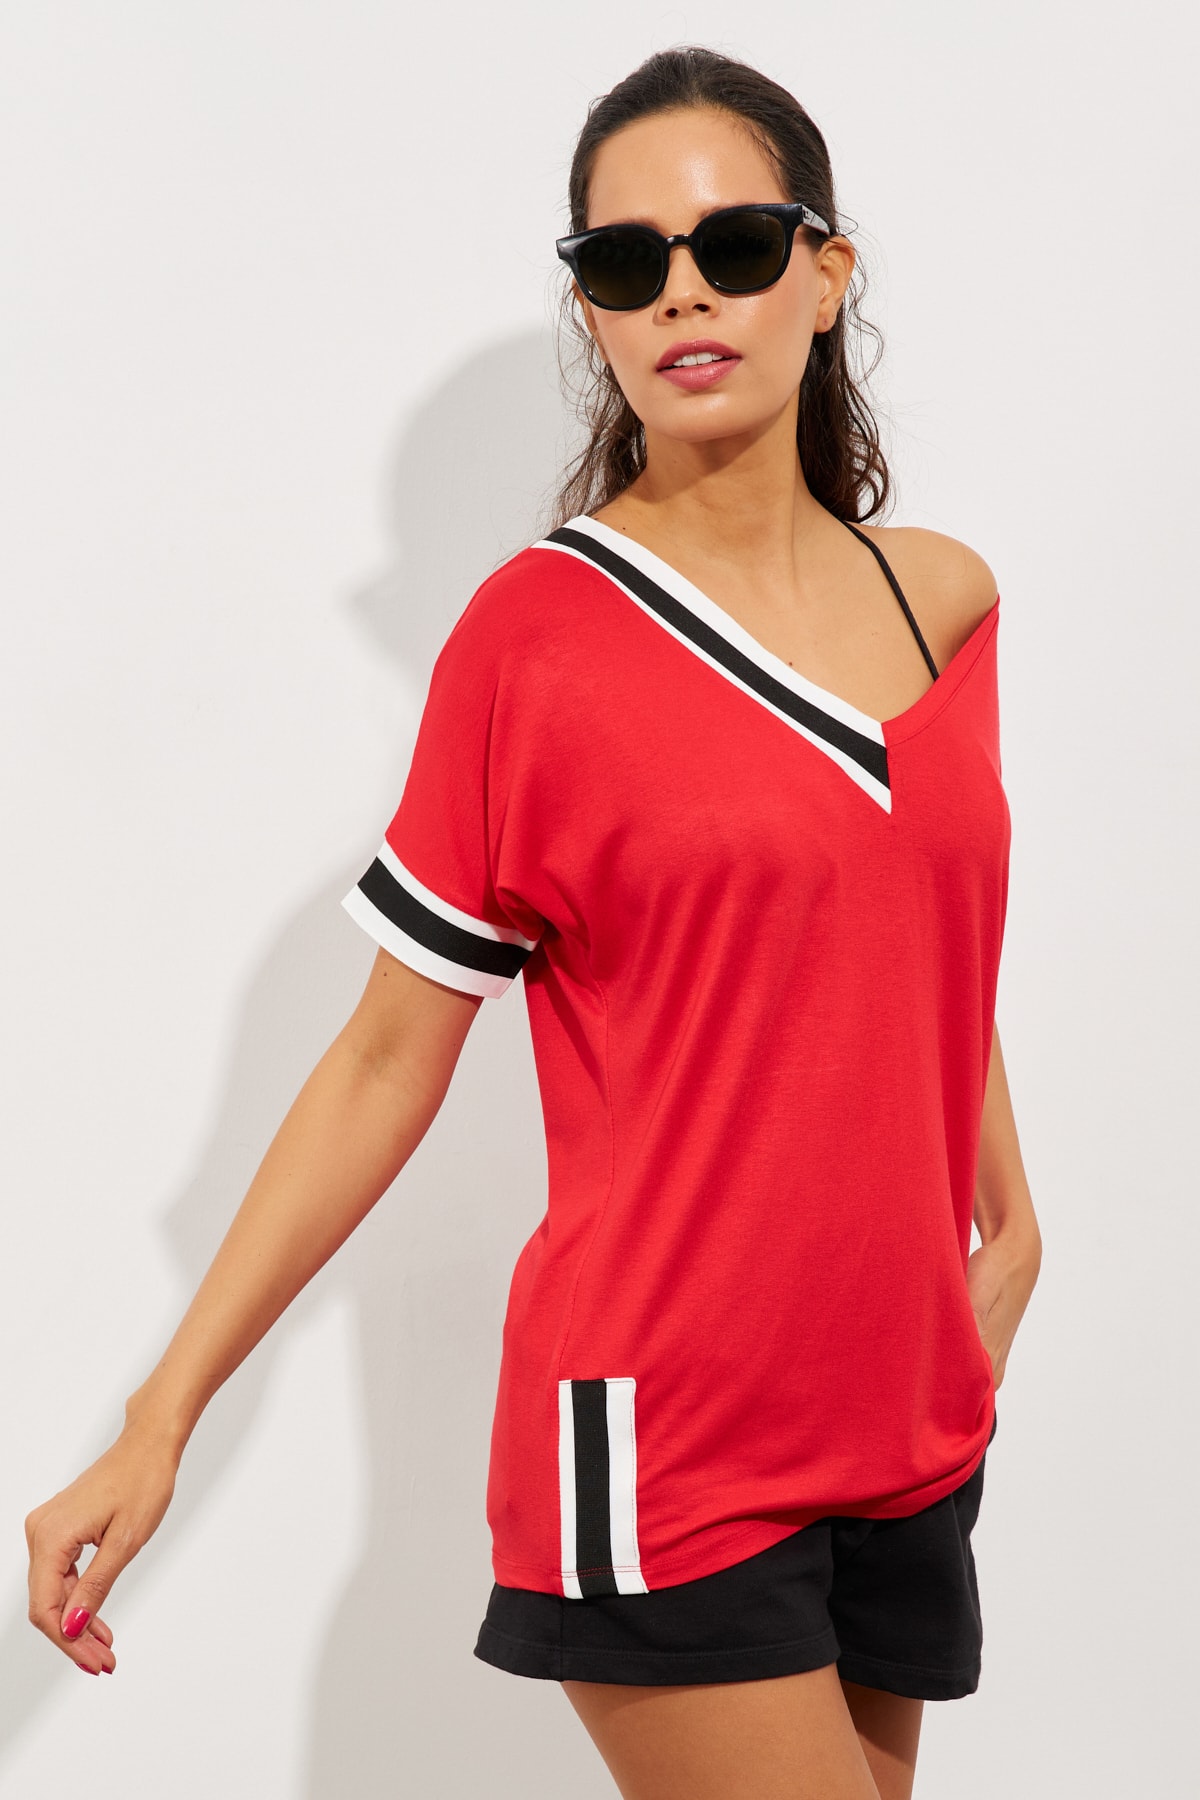 

Женская красная контрастная футболка ST396 Cool & Sexy, красный